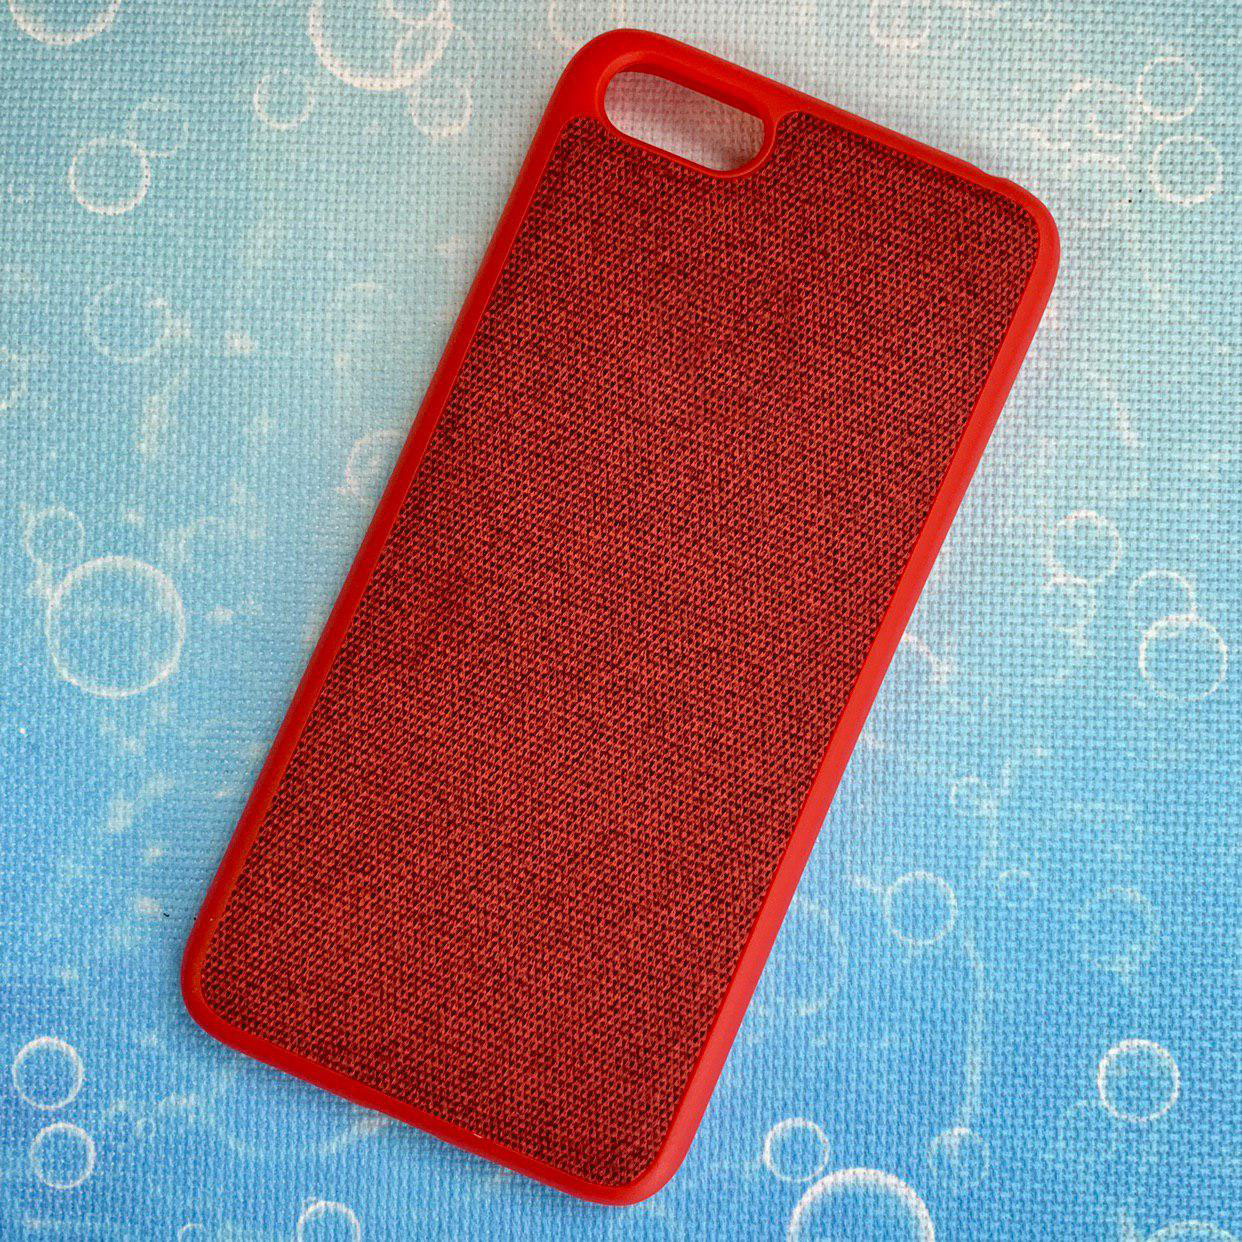 Чехол накладка для HUAWEI HONOR 7A, Y5 2018, Y5 PRIME, силикон, ткань, цвет красный.